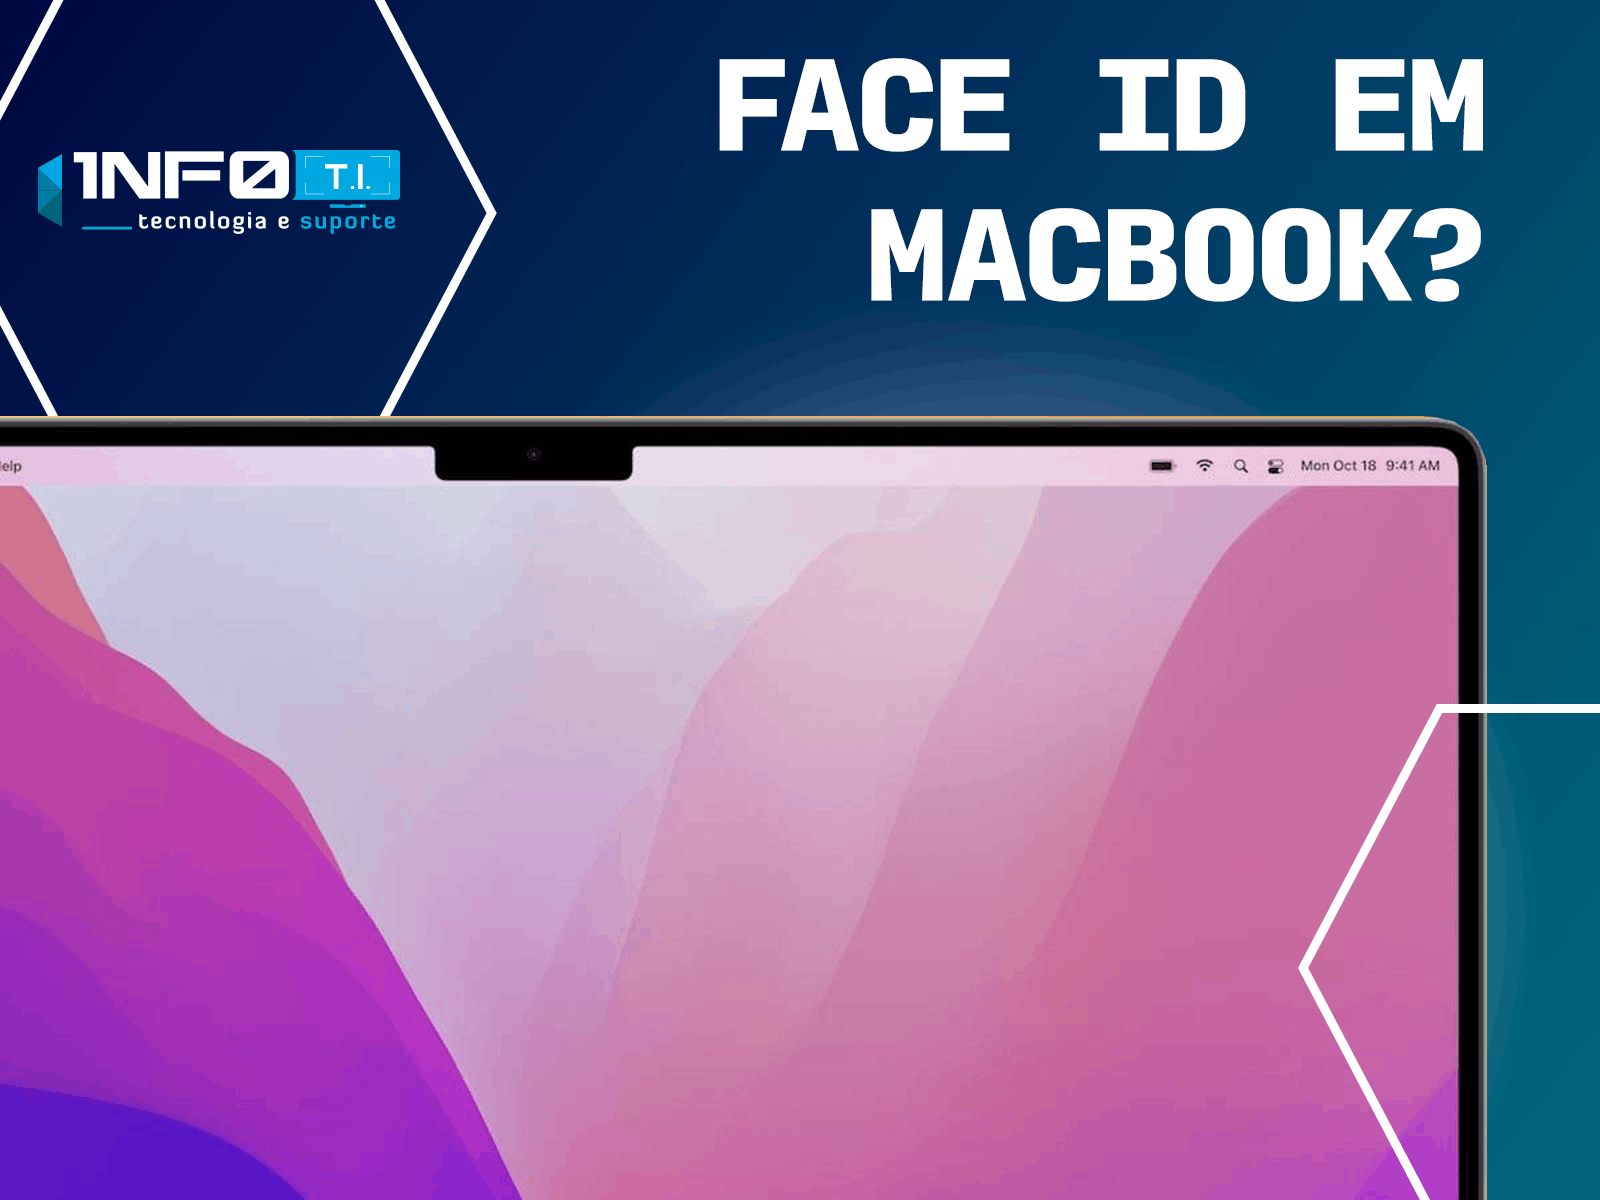 Macfaceid2.png - 110,90 kB